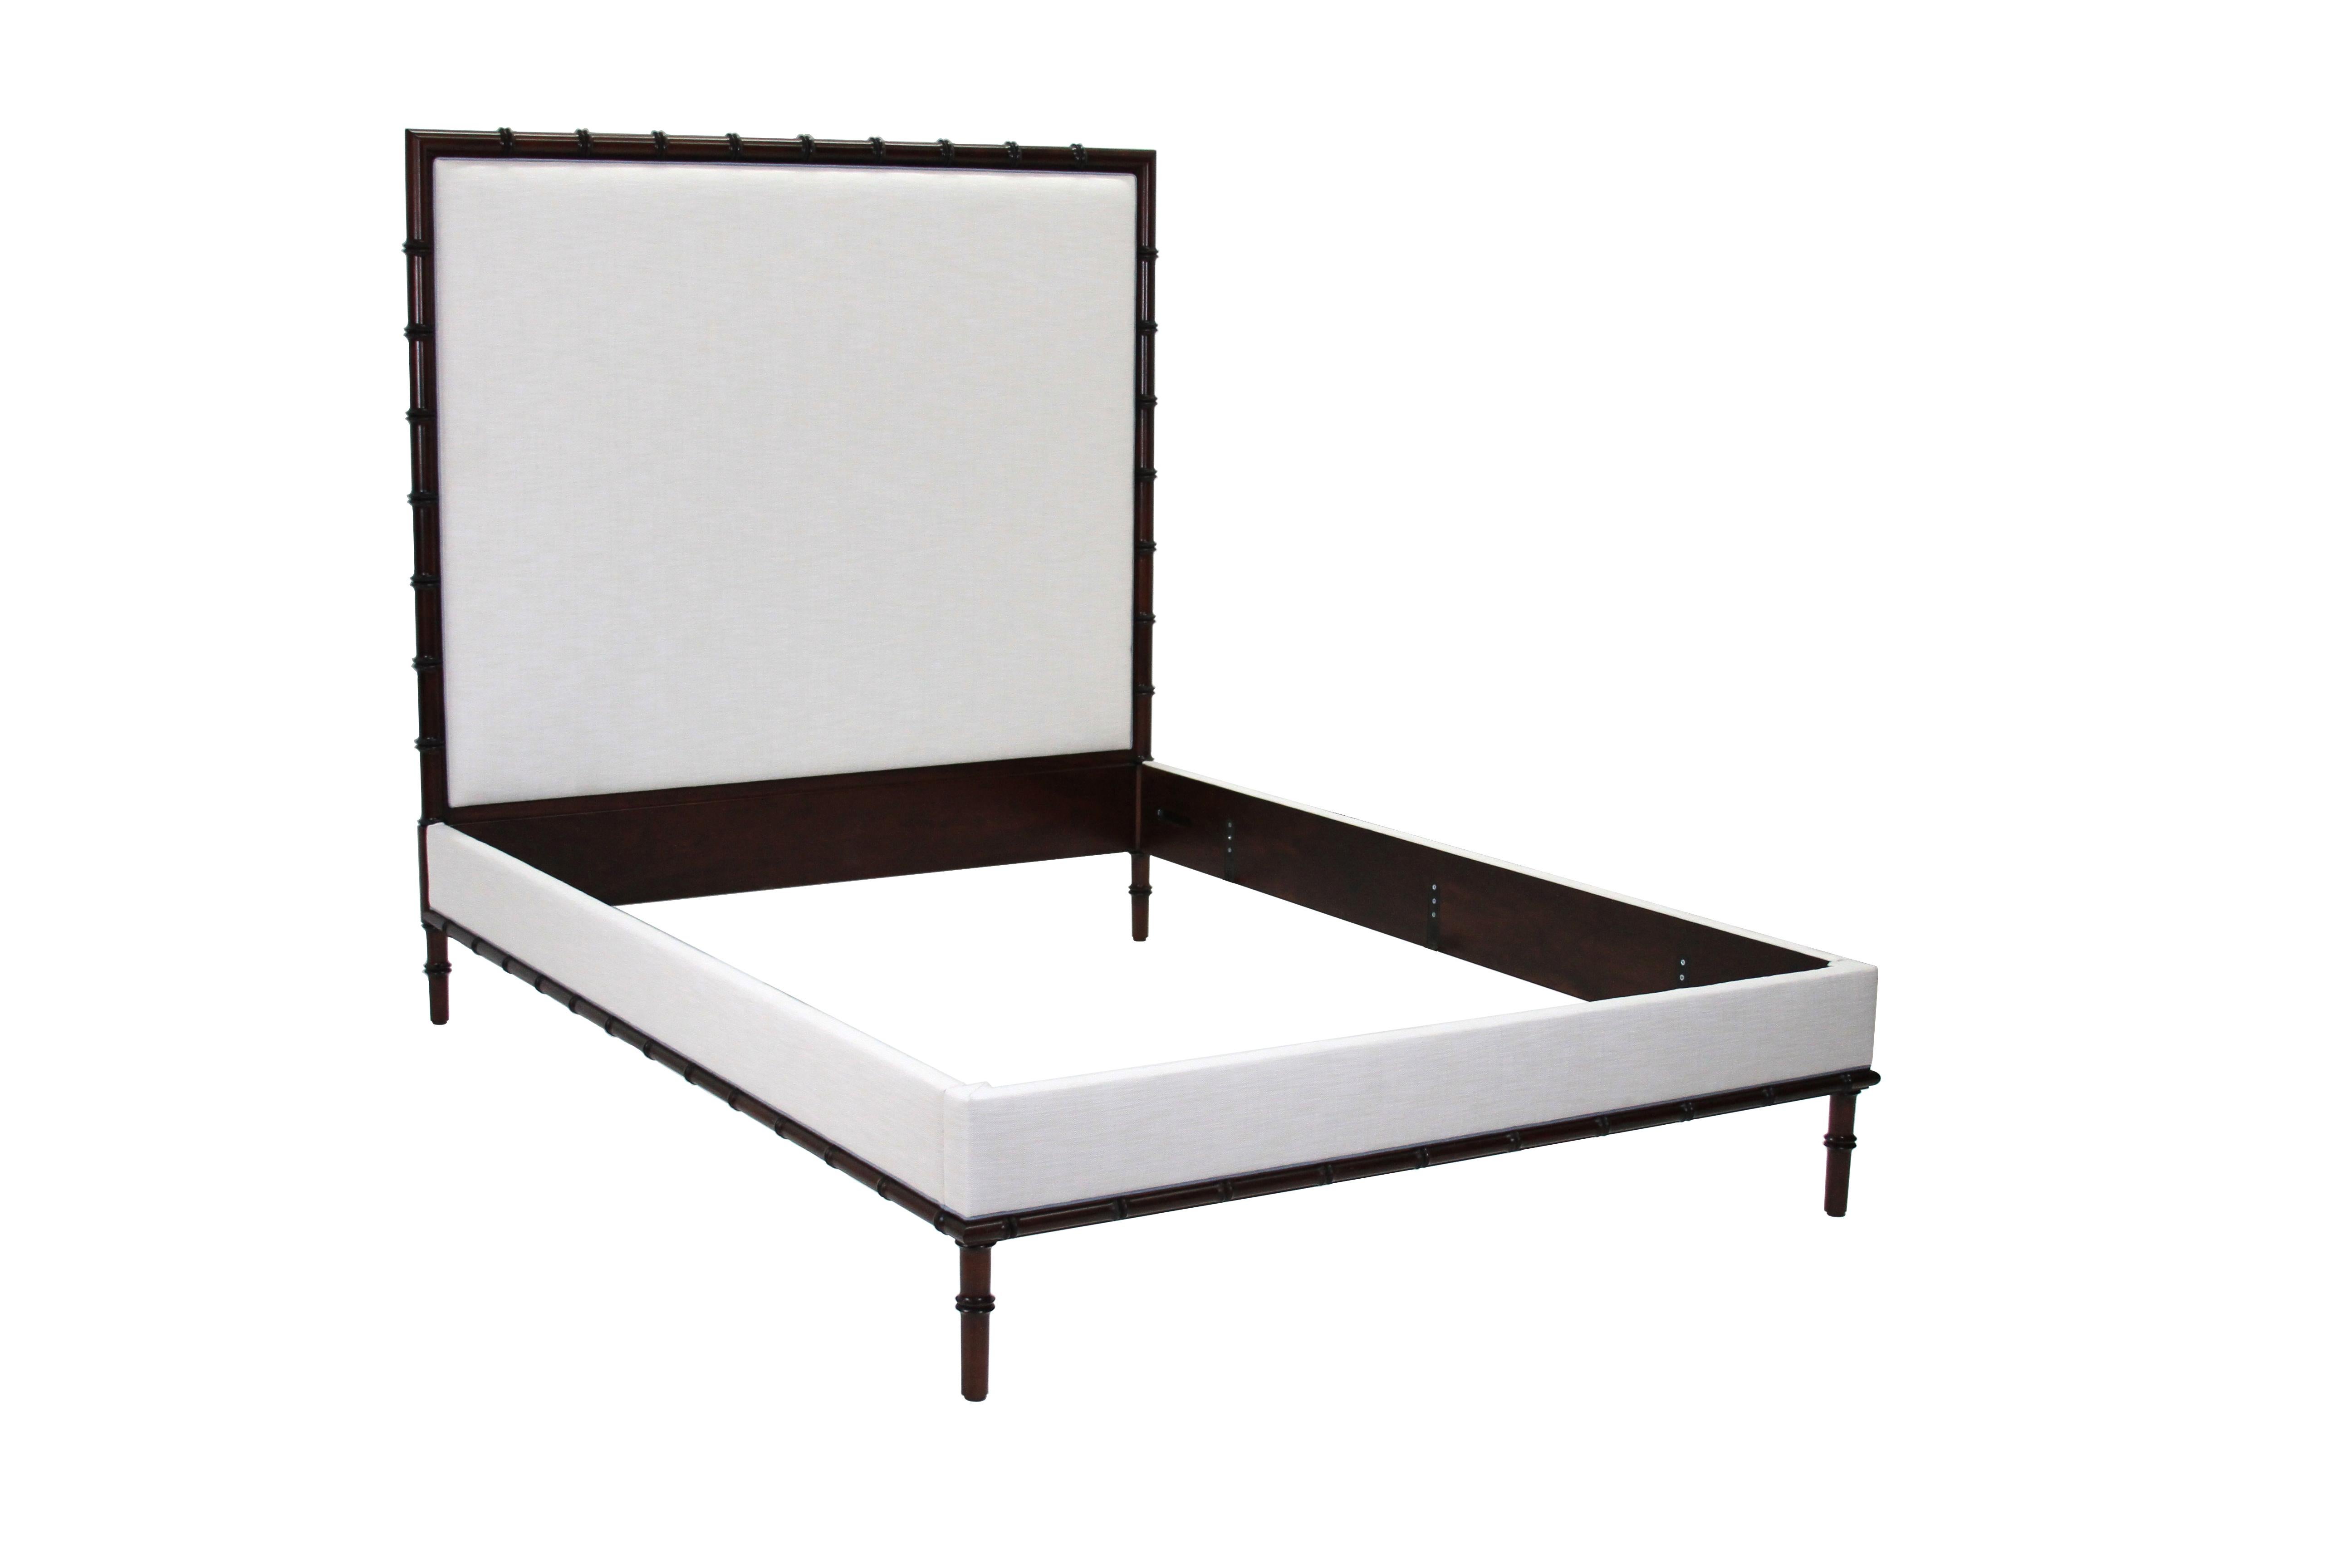 Le lit rembourré Bamboo est un bel hybride entre un lit traditionnel en bambou et le confort d'une tête de lit, d'un pied de lit et d'un panneau latéral rembourrés. Montré en acajou massif, il est disponible en plusieurs types de bois, tailles et